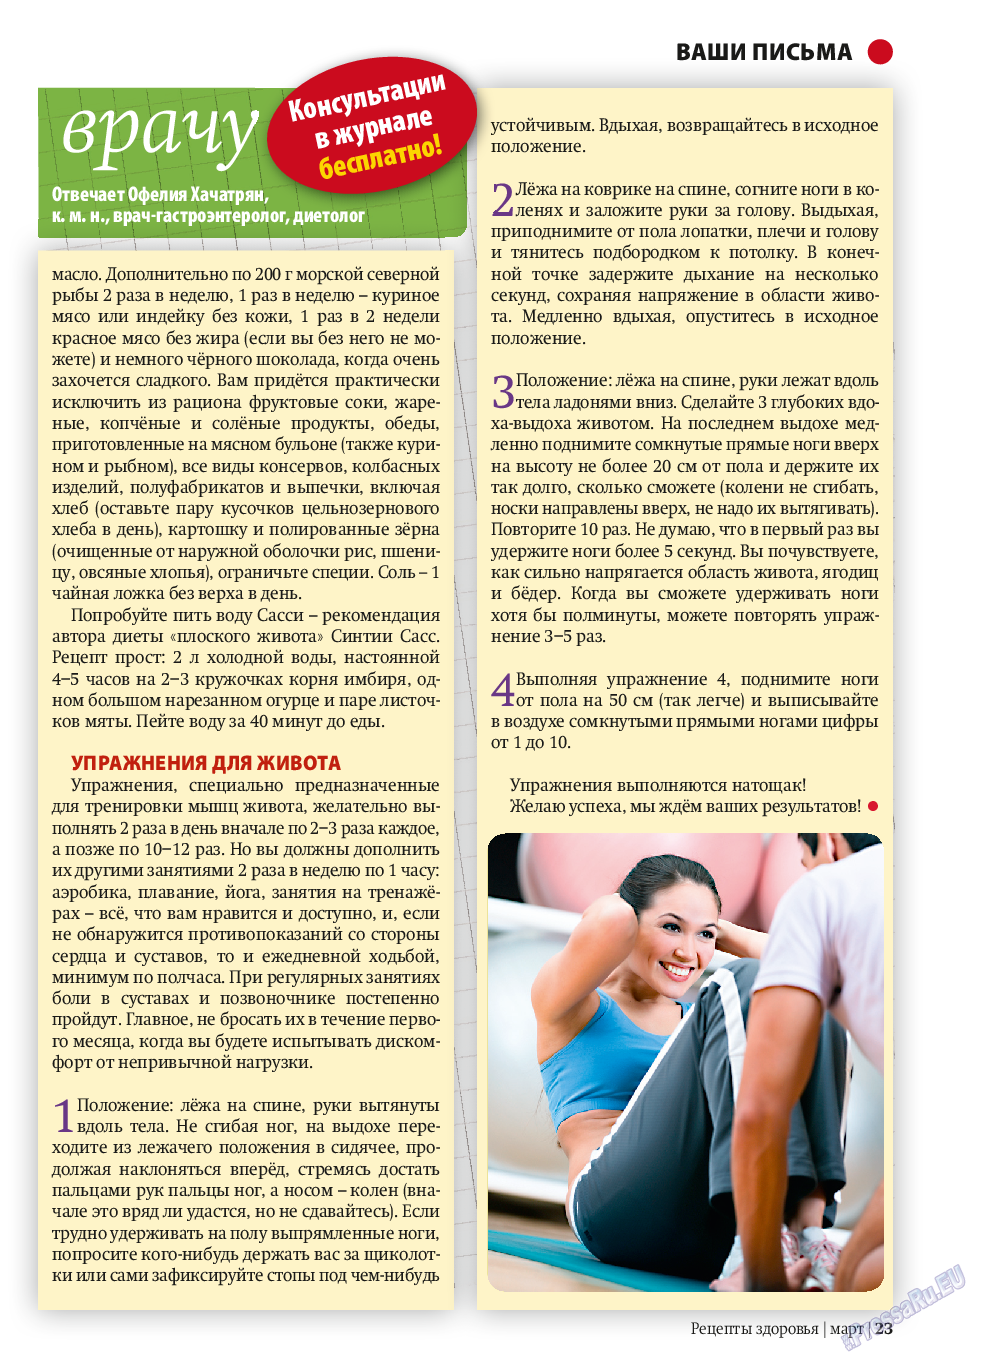 Рецепты здоровья, журнал. 2014 №58 стр.23